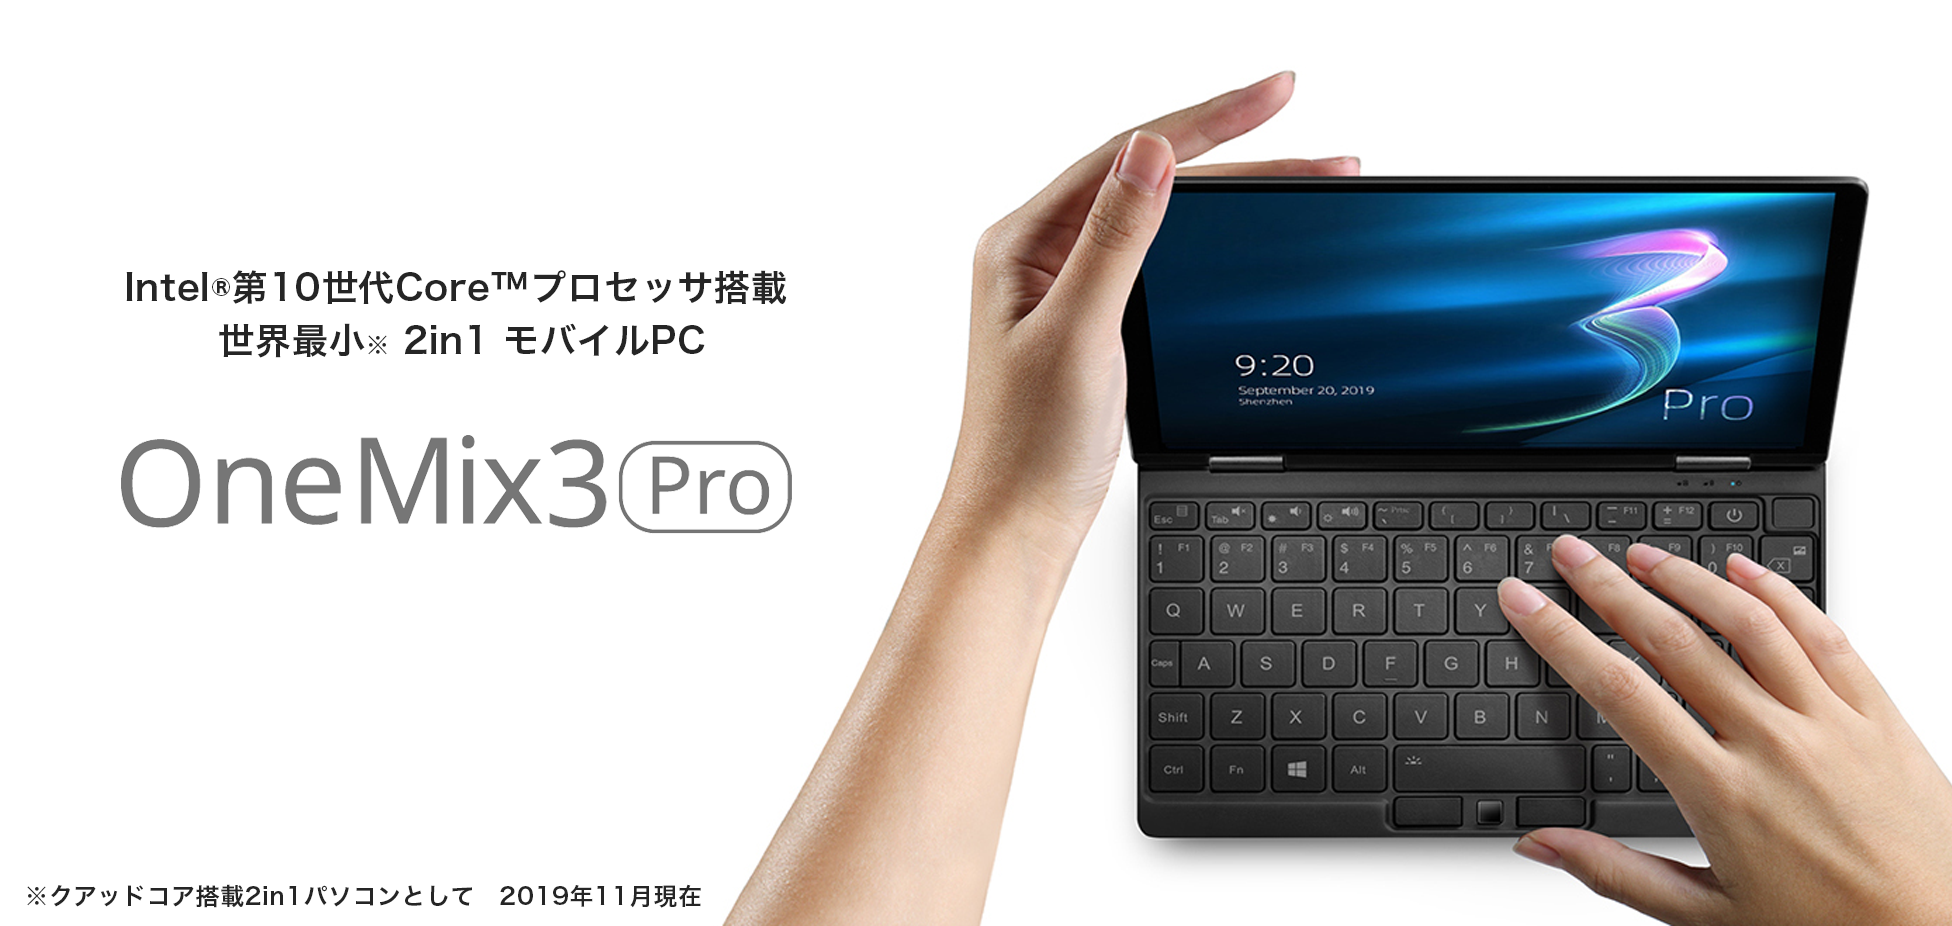 OneMix3 Pro - One-Netbookストア